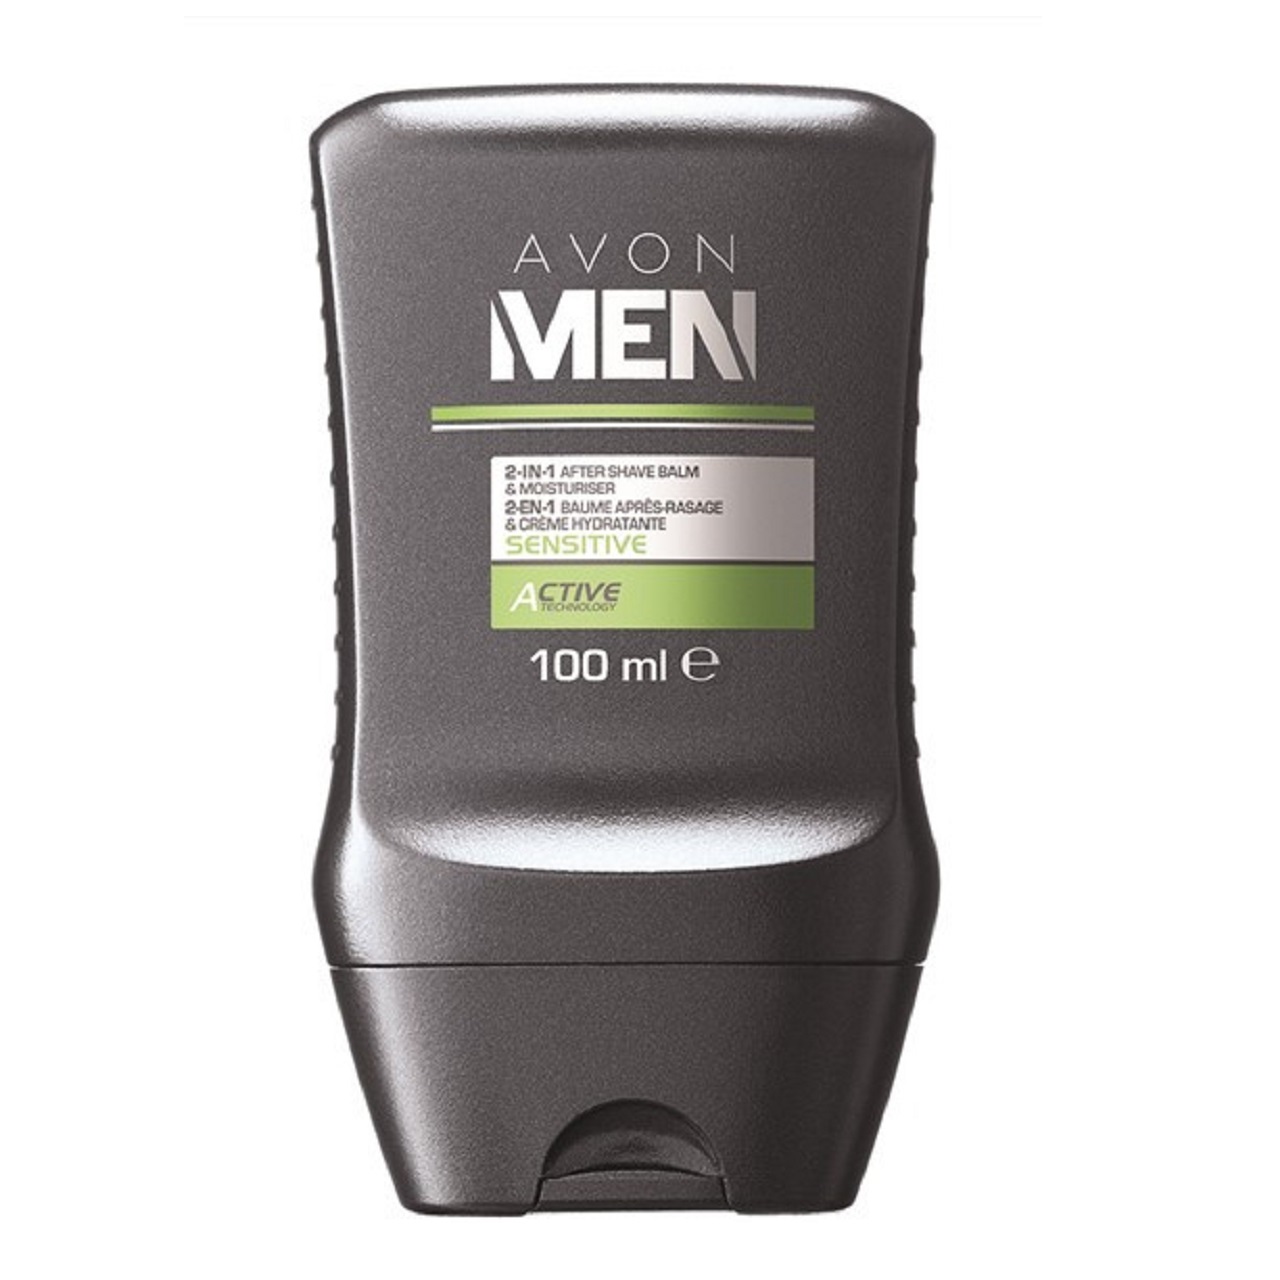 افتر شیو آون مدل Avon Men Sensitive 2-1 After Shave Balm and Moisturiser حجم 100 میلی لیتر